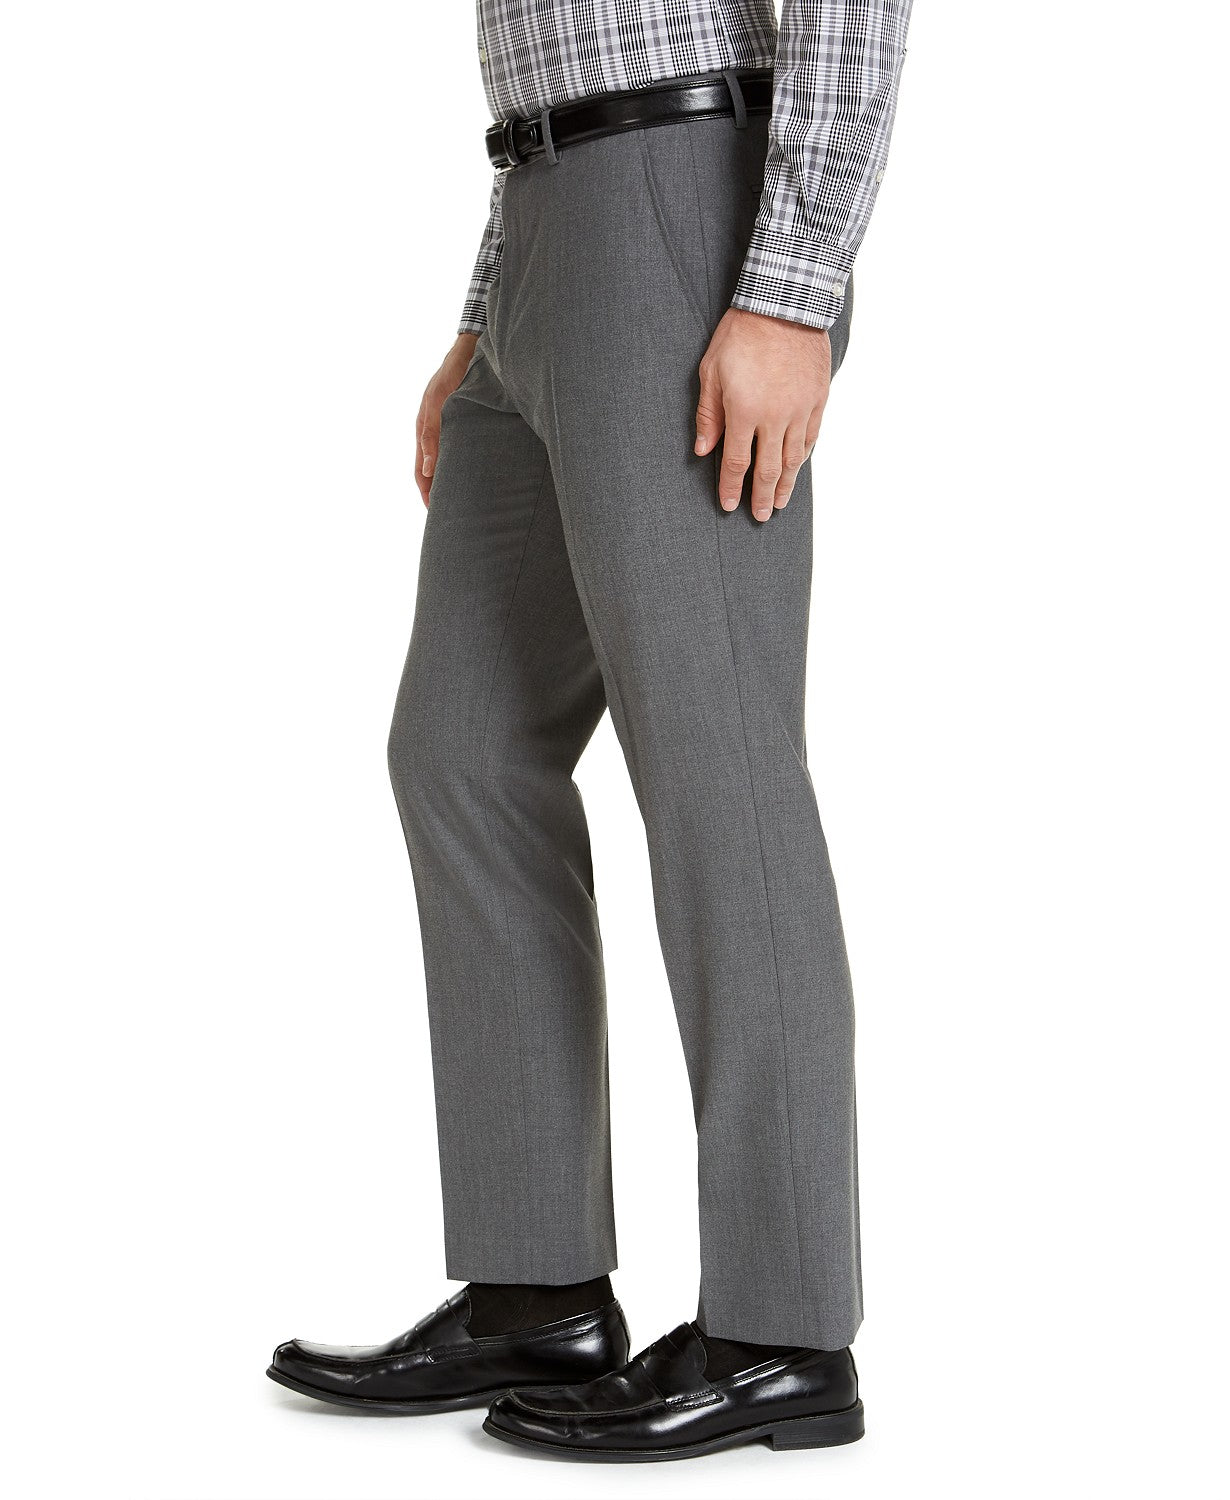 IZOD Men's Classic-Fit Suit Pants Grey Solid 34 x 30 Flat Front Pant